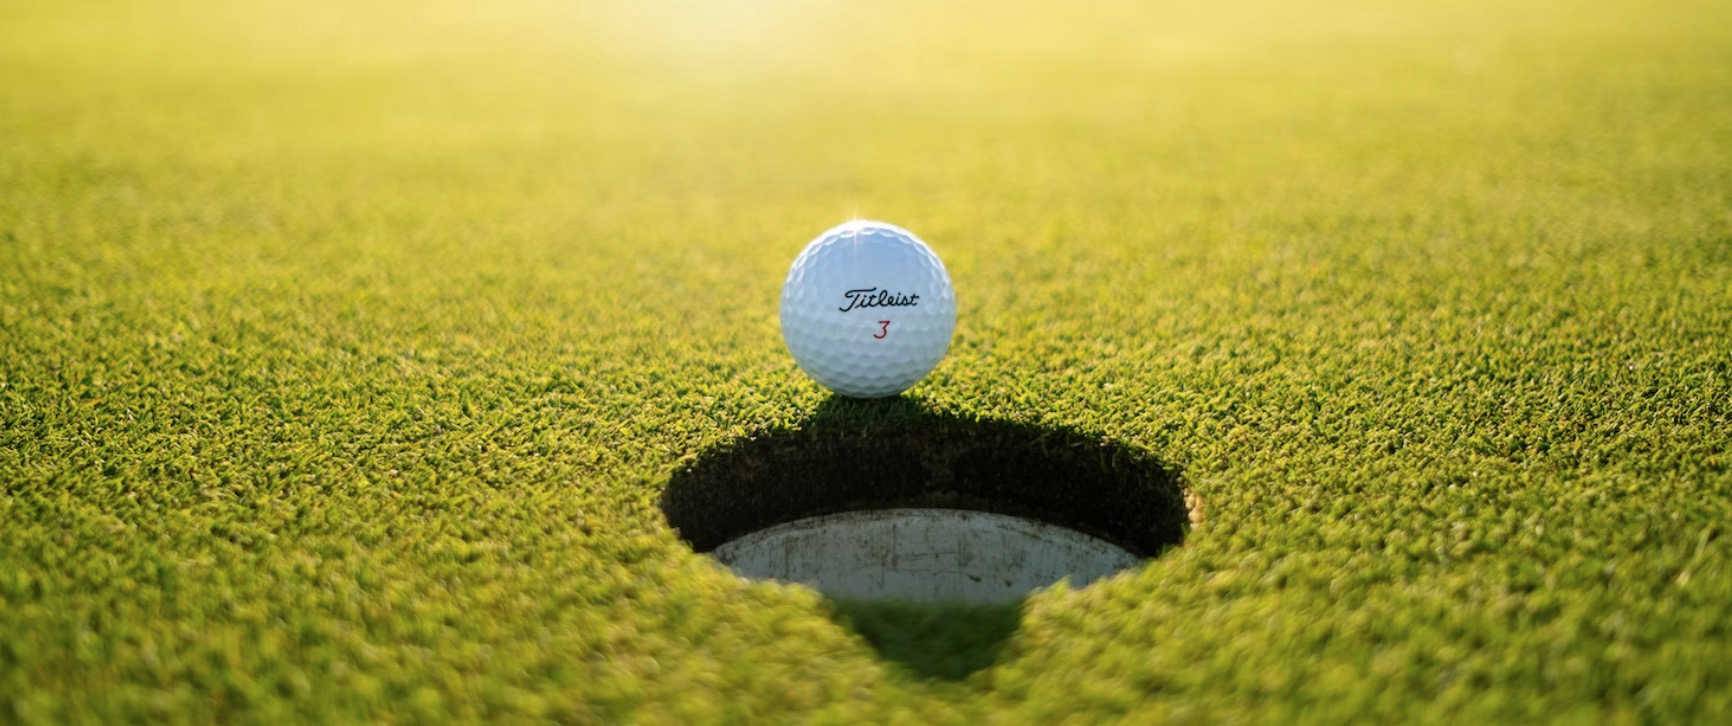 Le golf, un sport réservé pour les riches ?